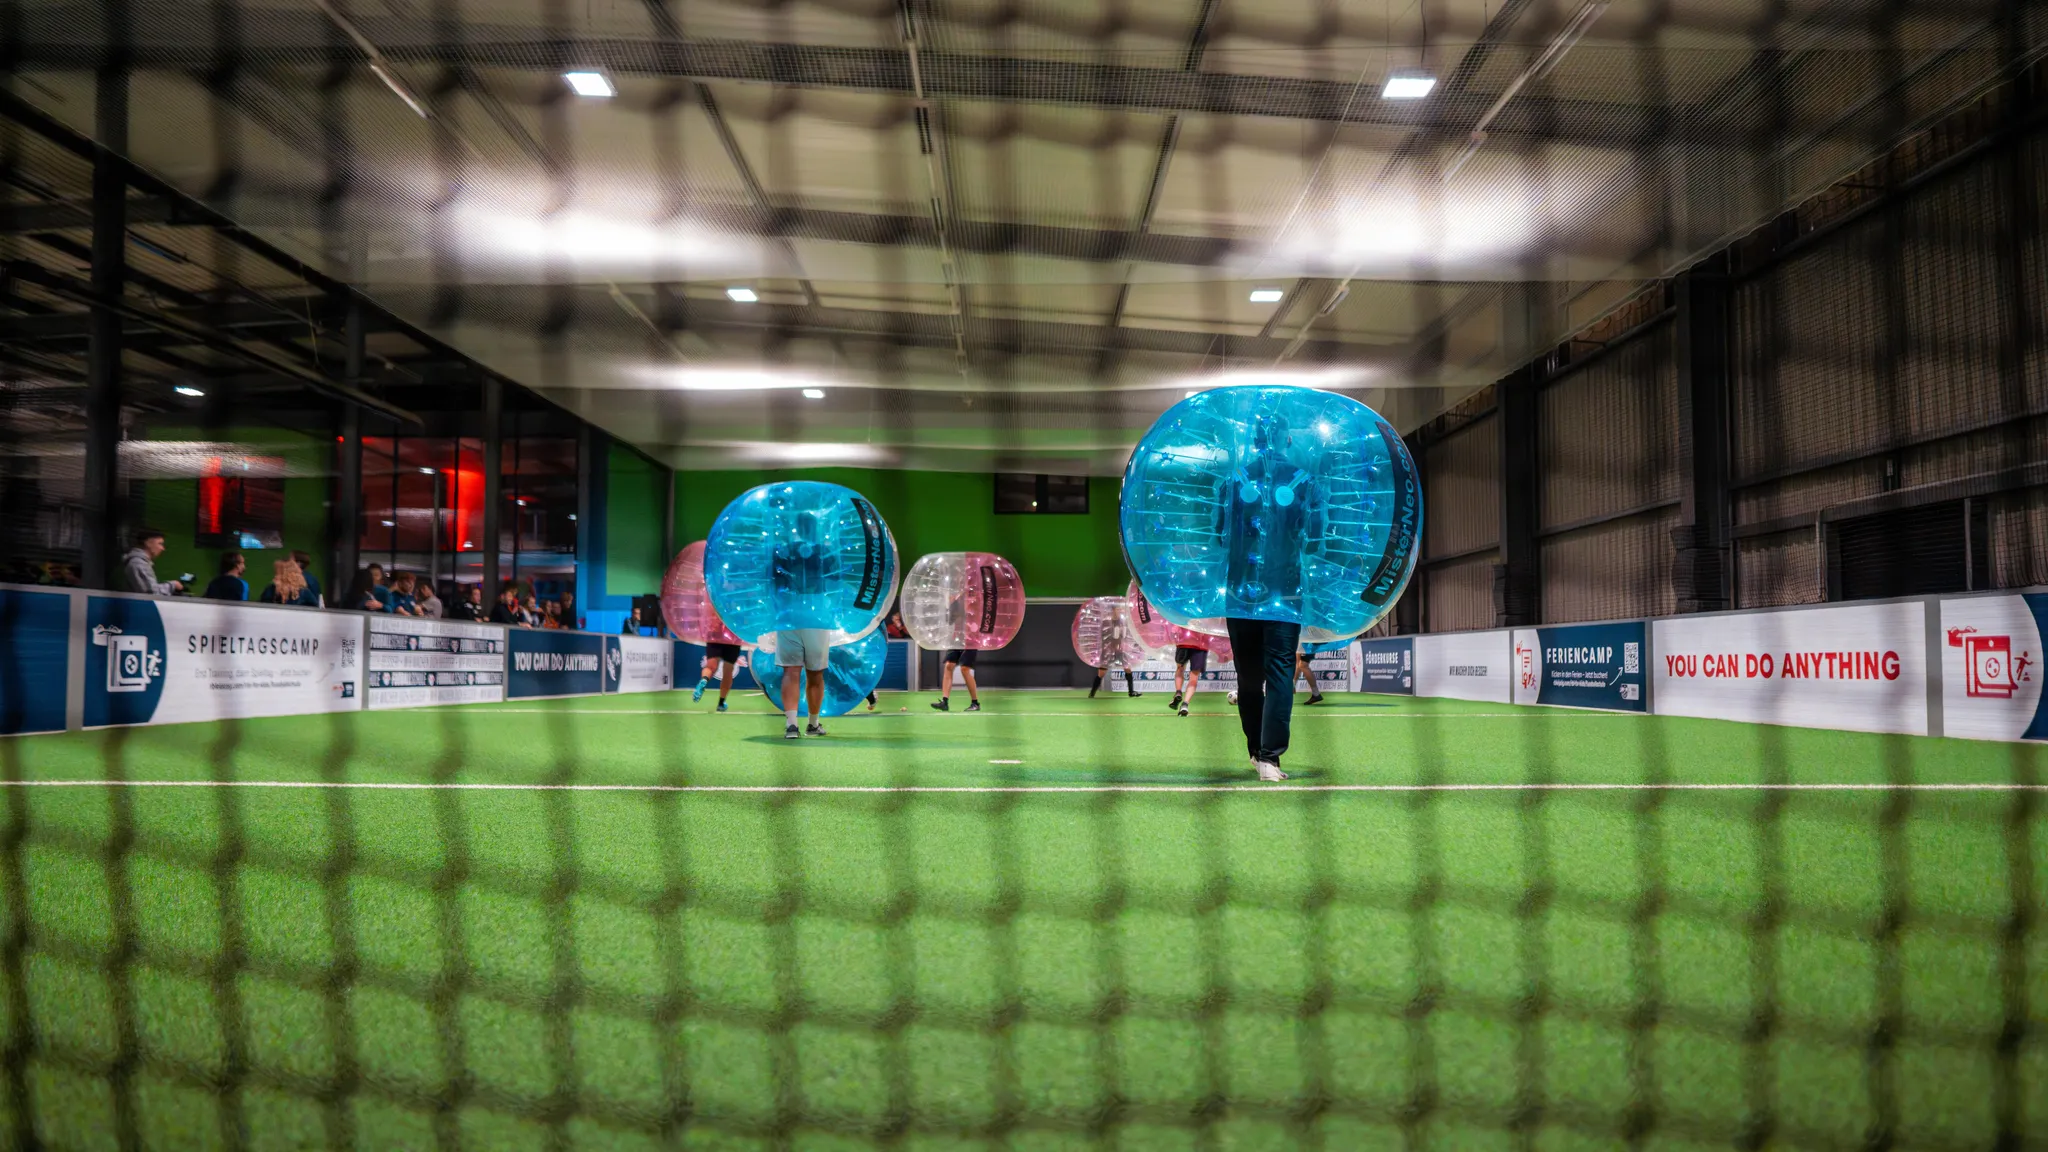 Jede Menge Spaß hatten die Teilnehmenden beim Bubble-Soccer.